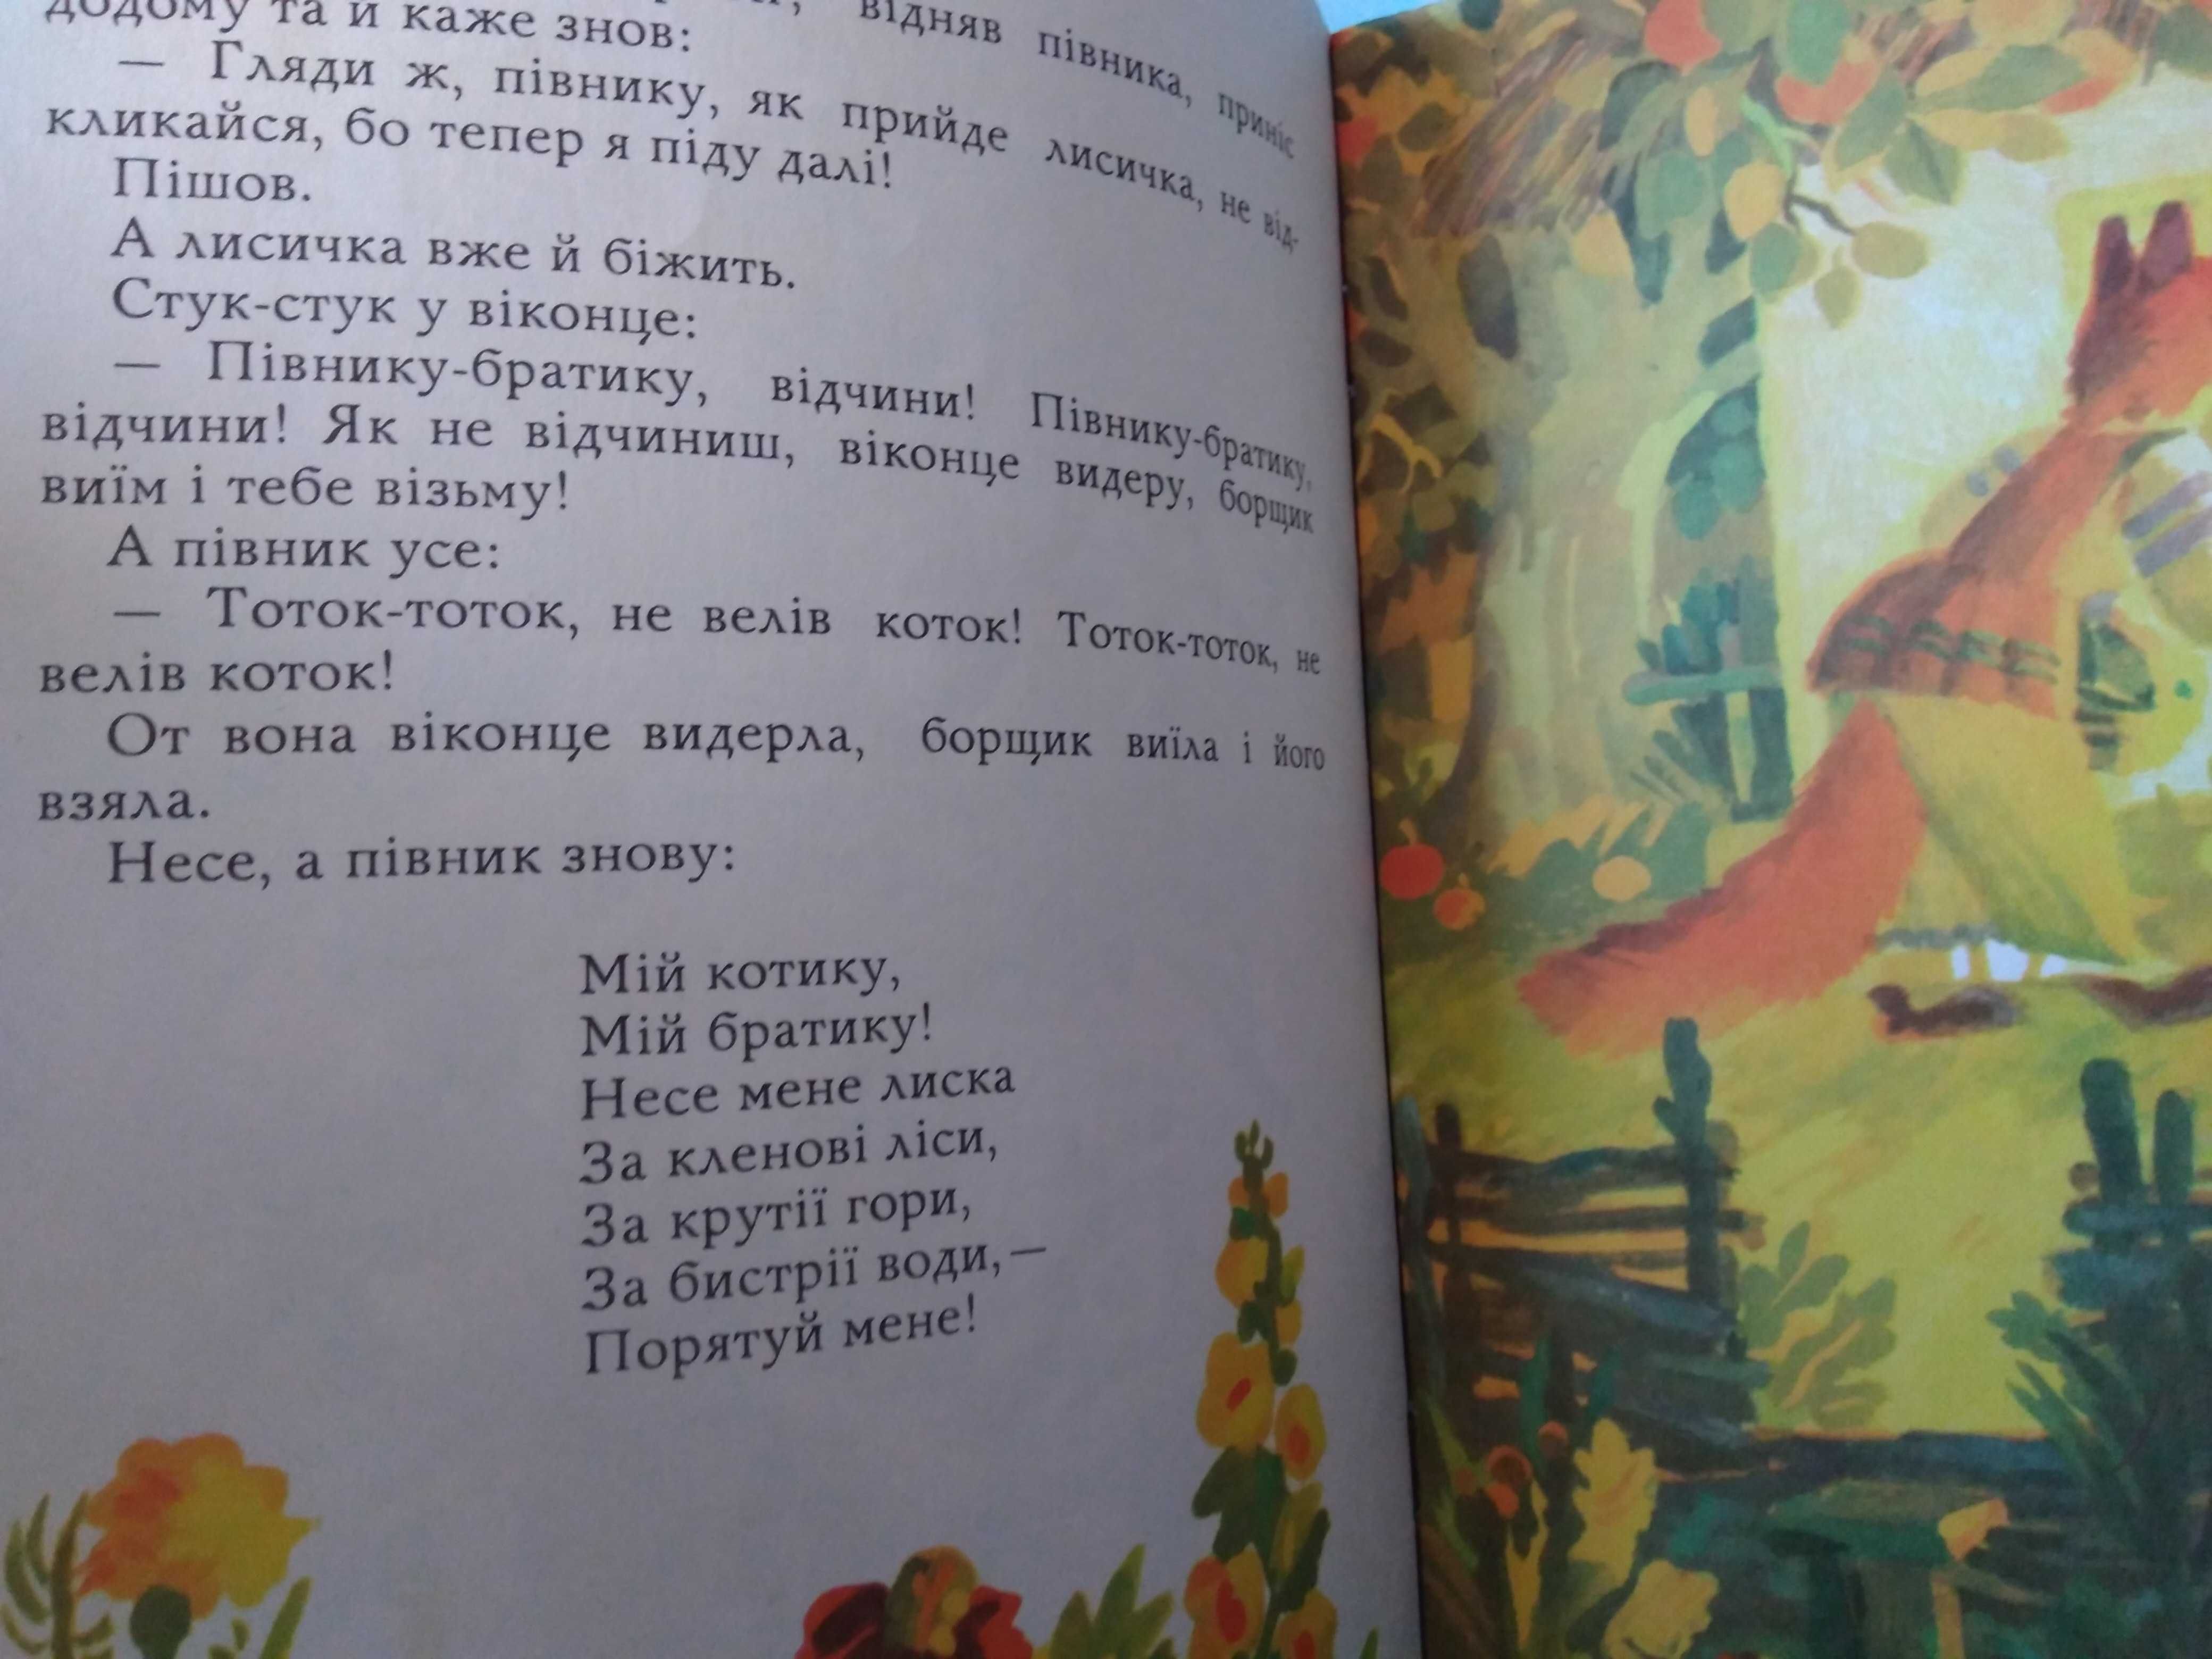 Котик і Півник. Казка.Художник В.Кавун.1981.